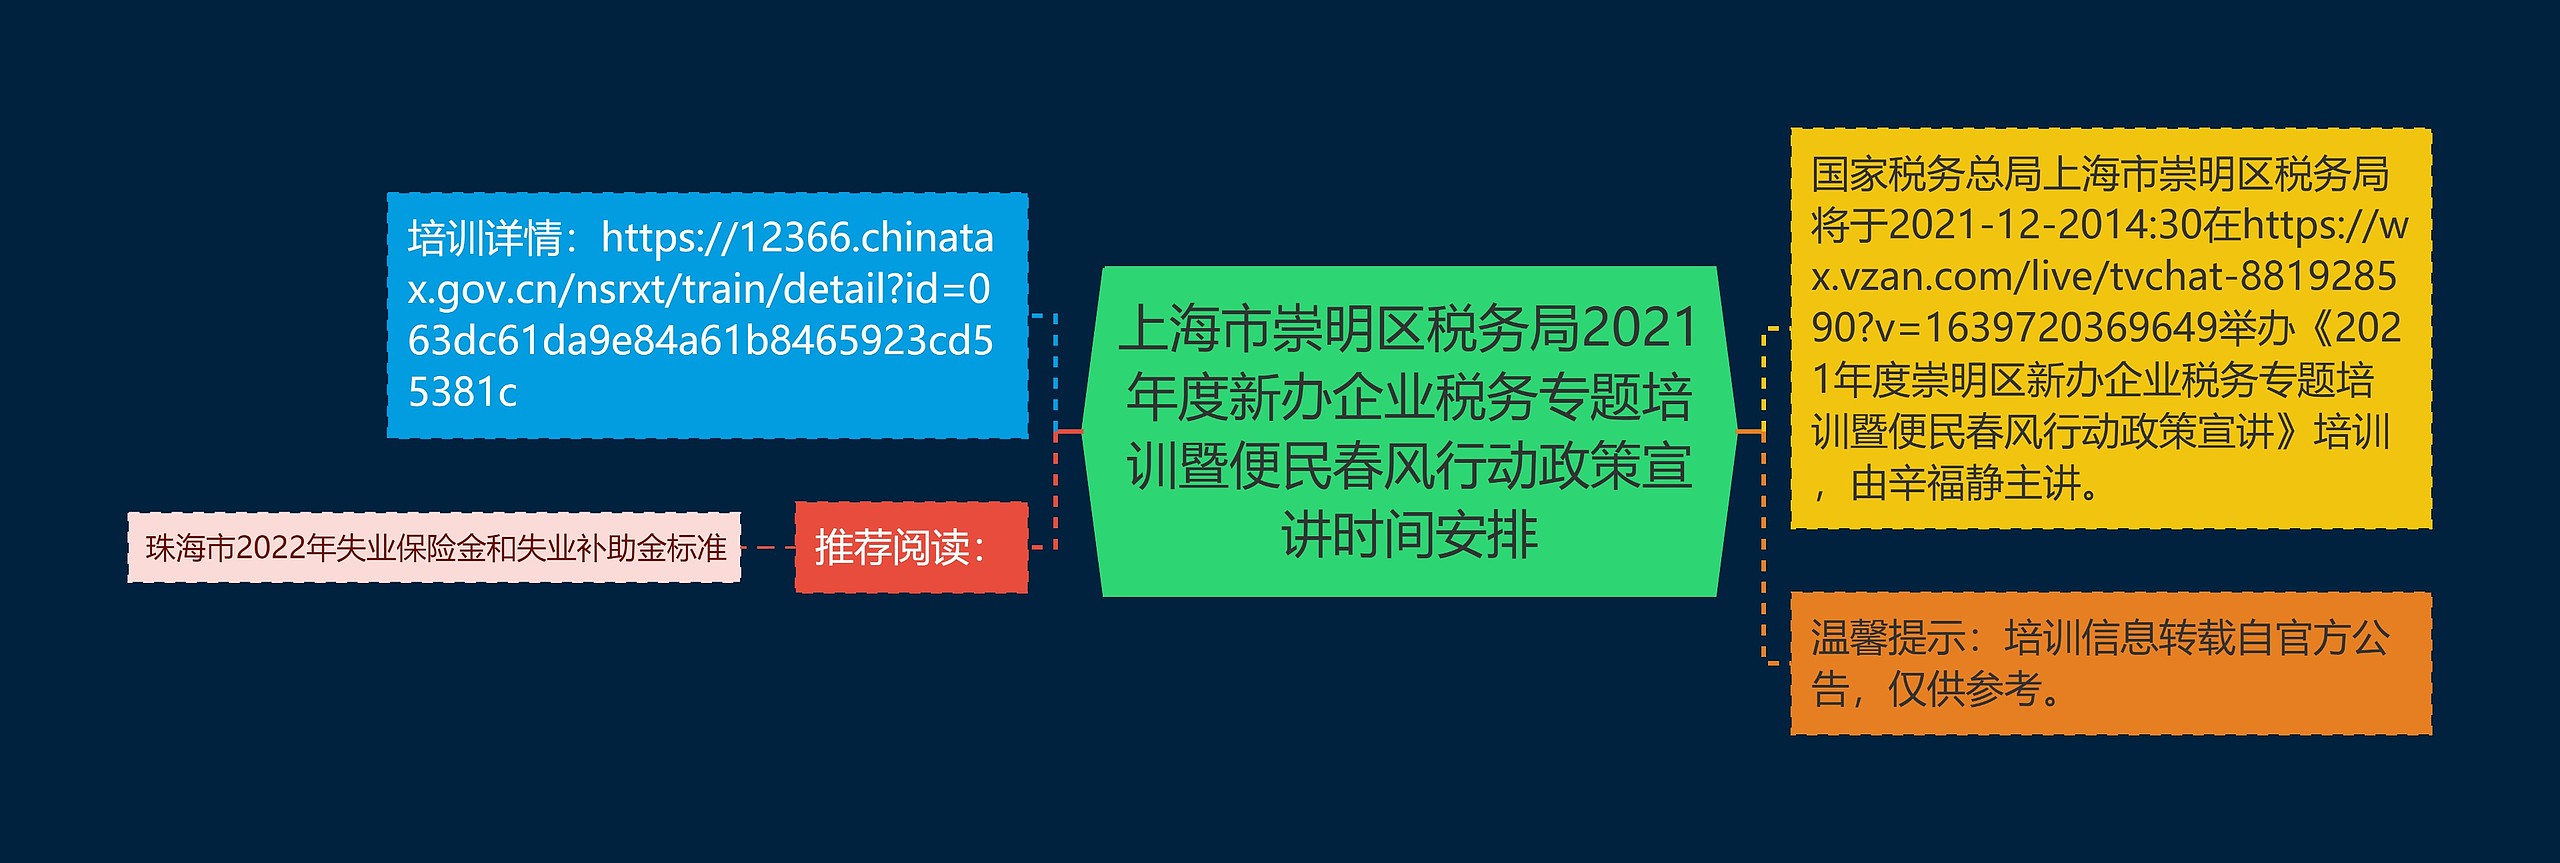 上海市崇明区税务局2021年度新办企业税务专题培训暨便民春风行动政策宣讲时间安排